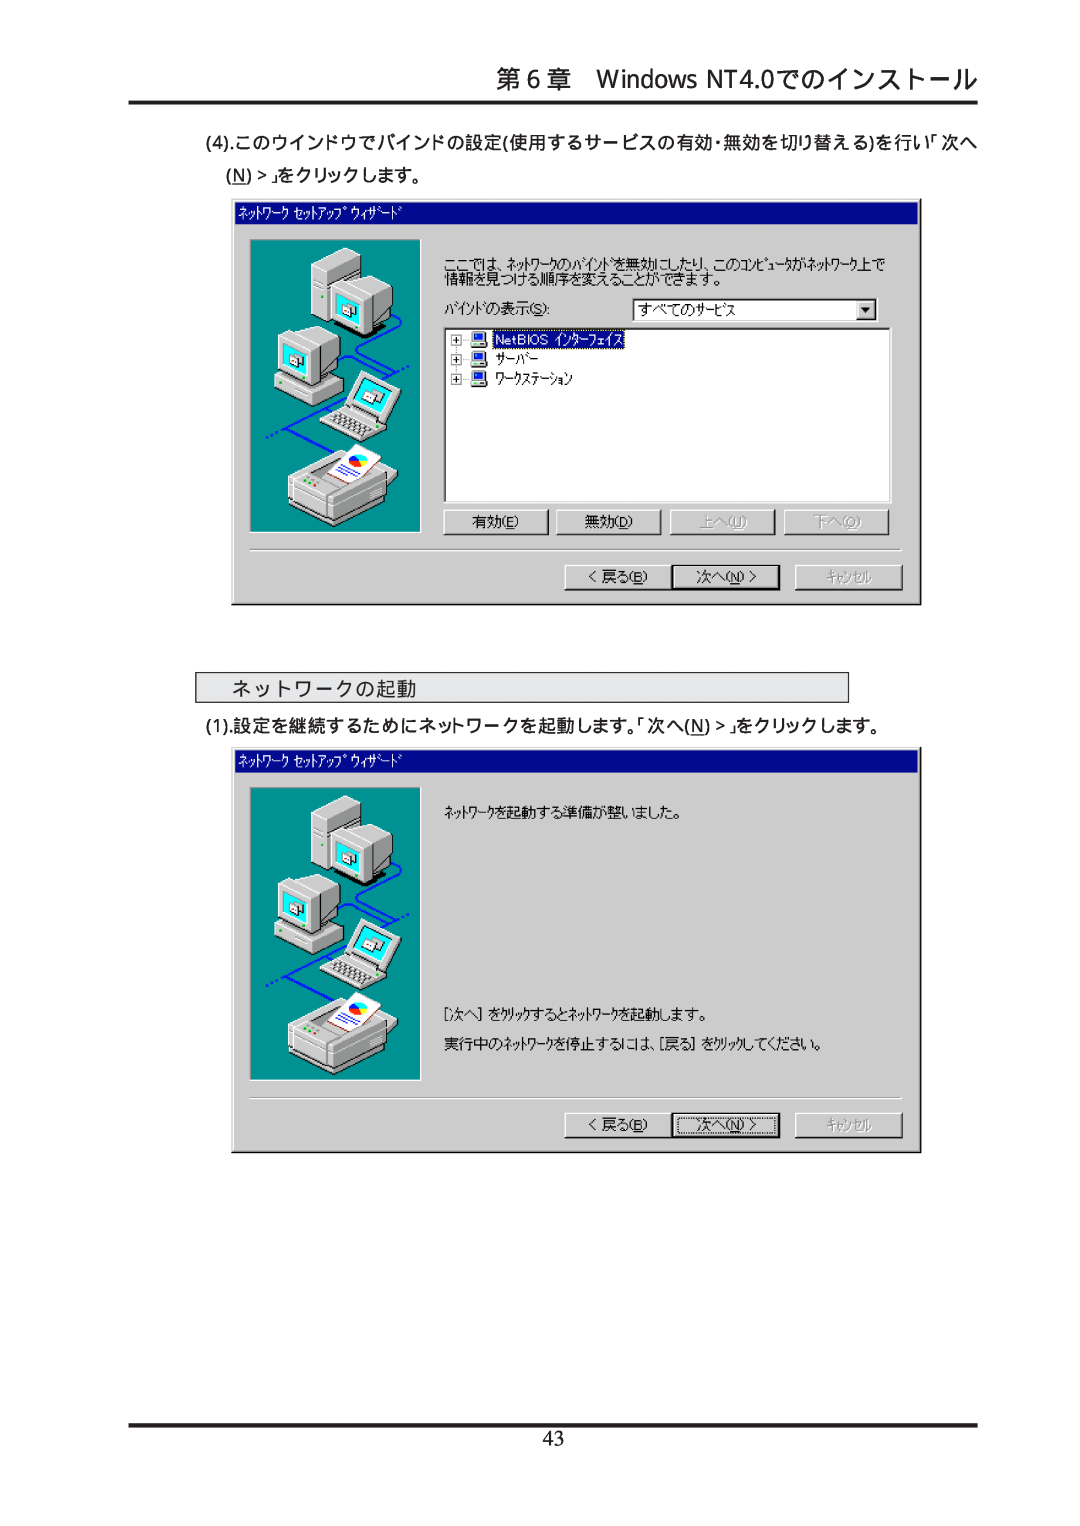 Ratoc Systems REX-R280 第６章 Windows NT4.0でのインストール, ネットワークの起動, 4.このウインドウでバインドの設定使用するサービスの有効・無効を切り替えるを行い「次へ N 」をクリックします。 